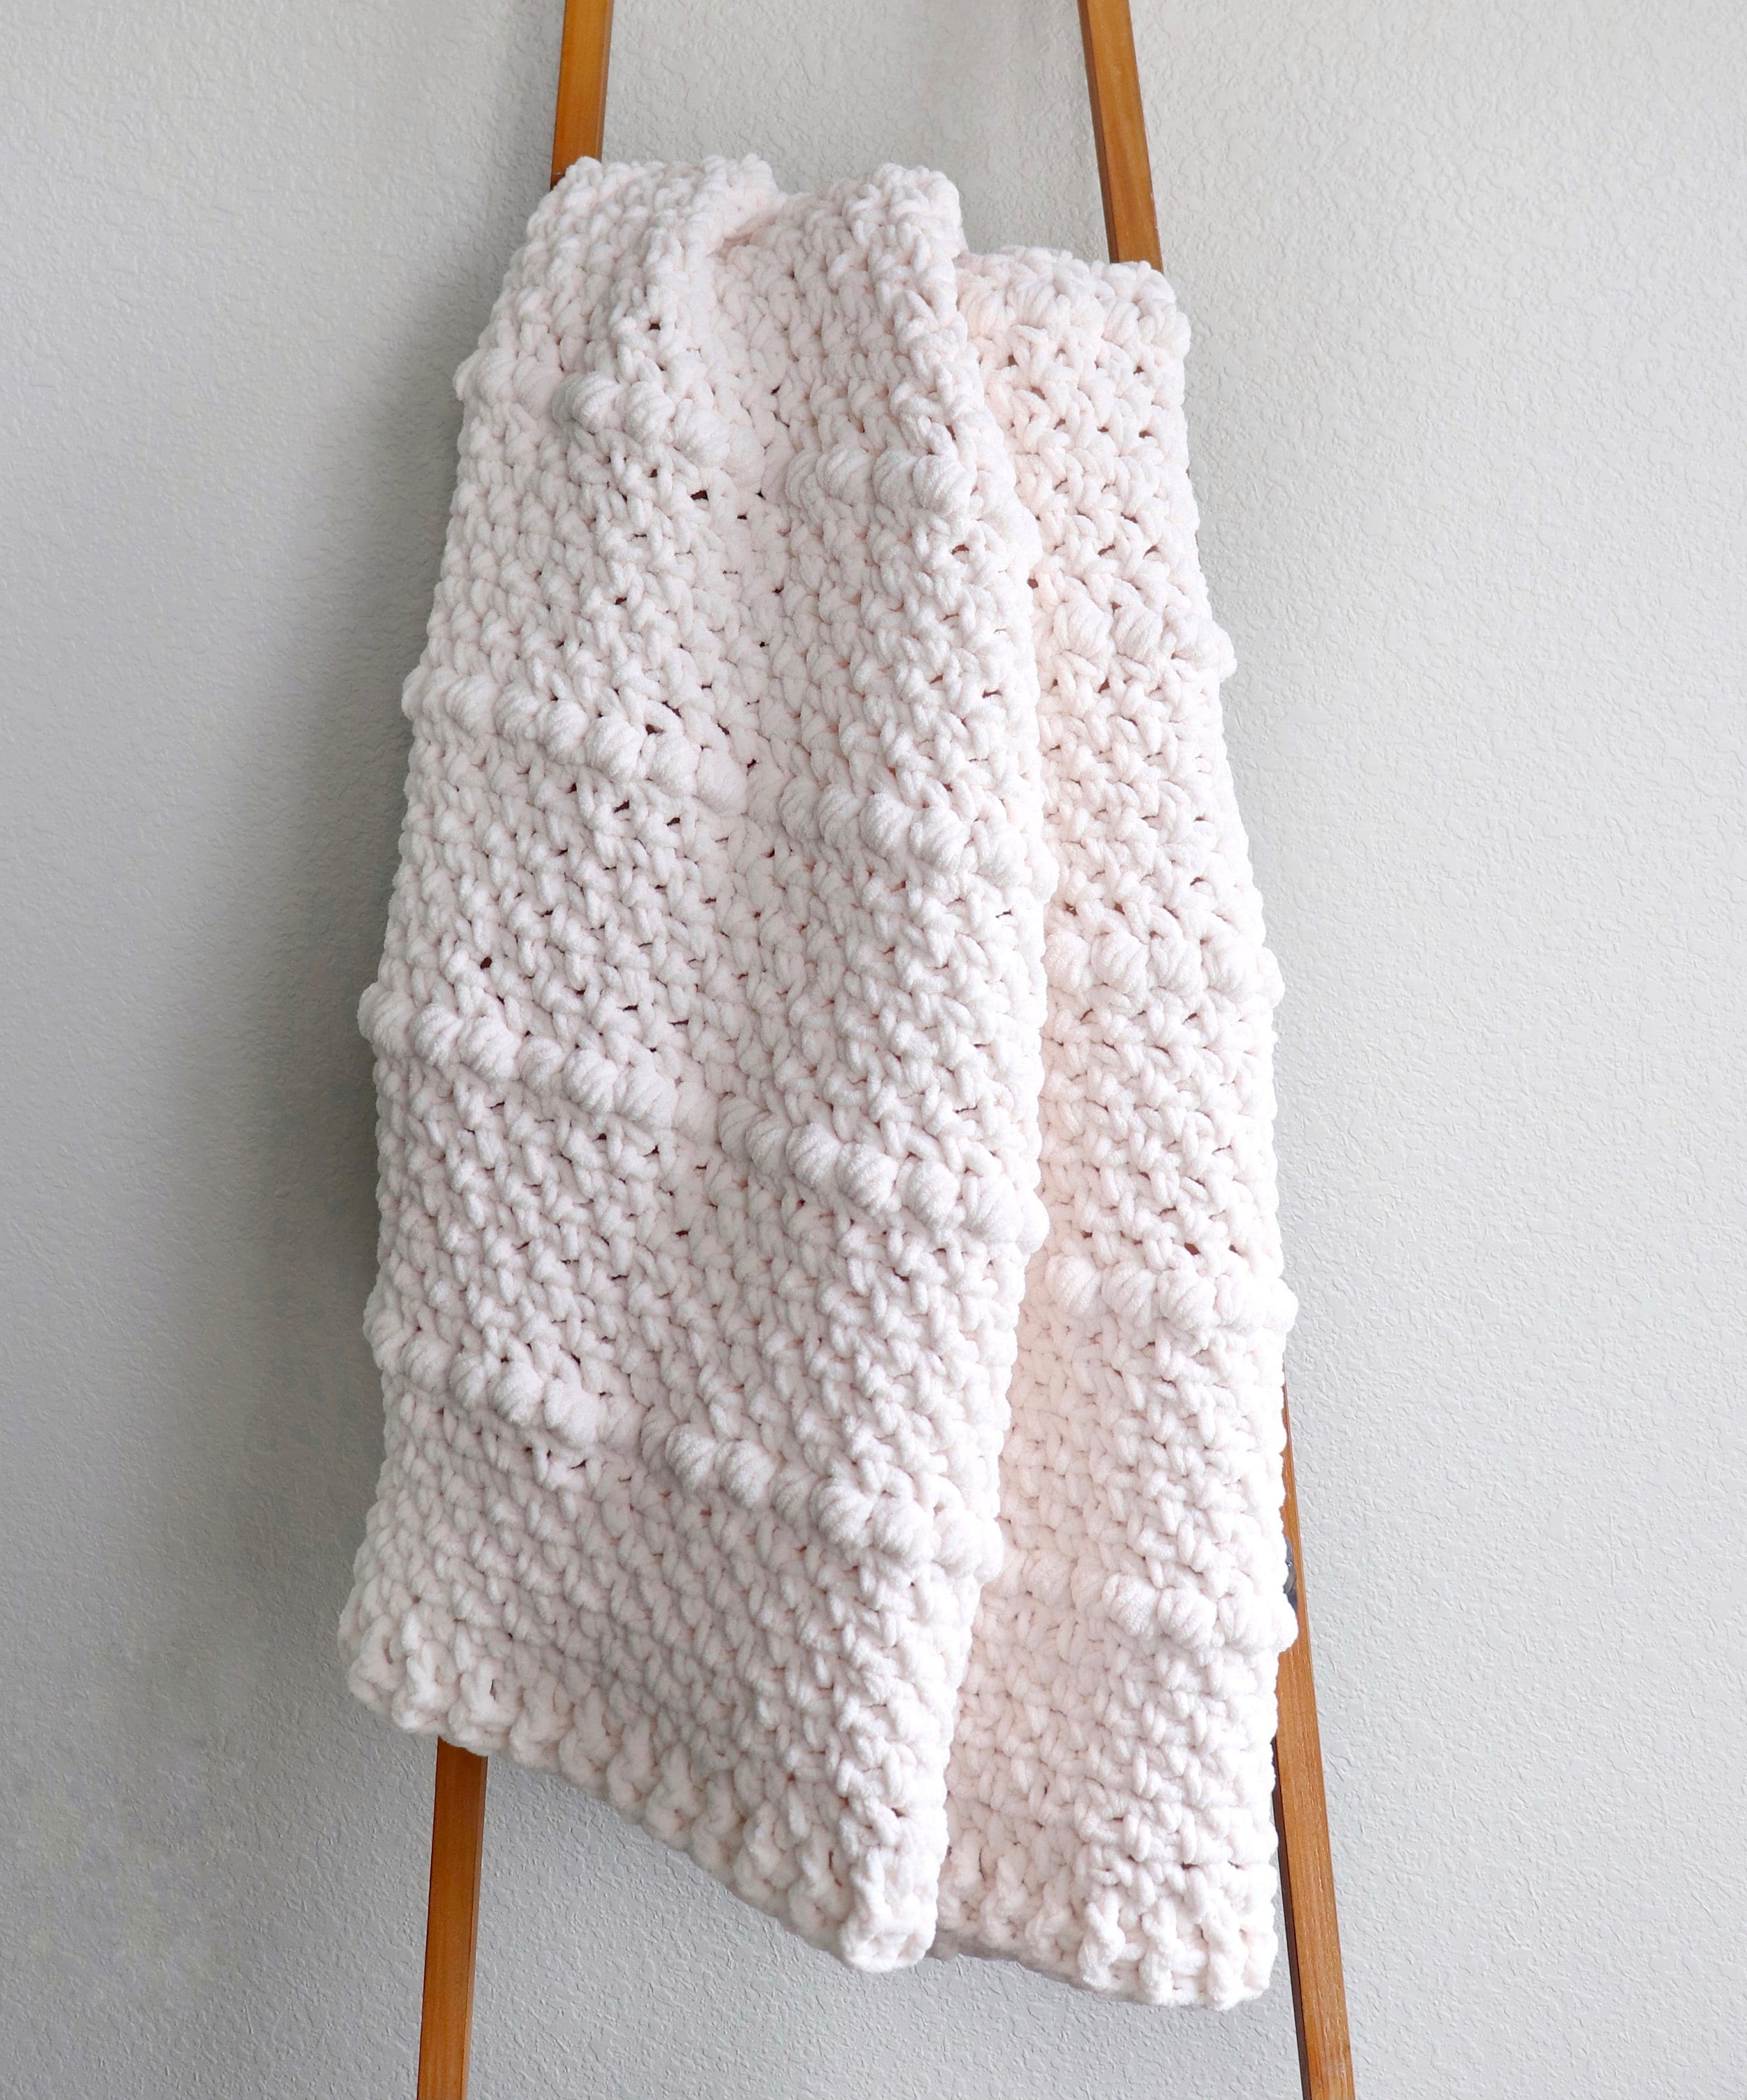 Crochet cuddle blanket for Braylon Made with Bernat Baby Blanket